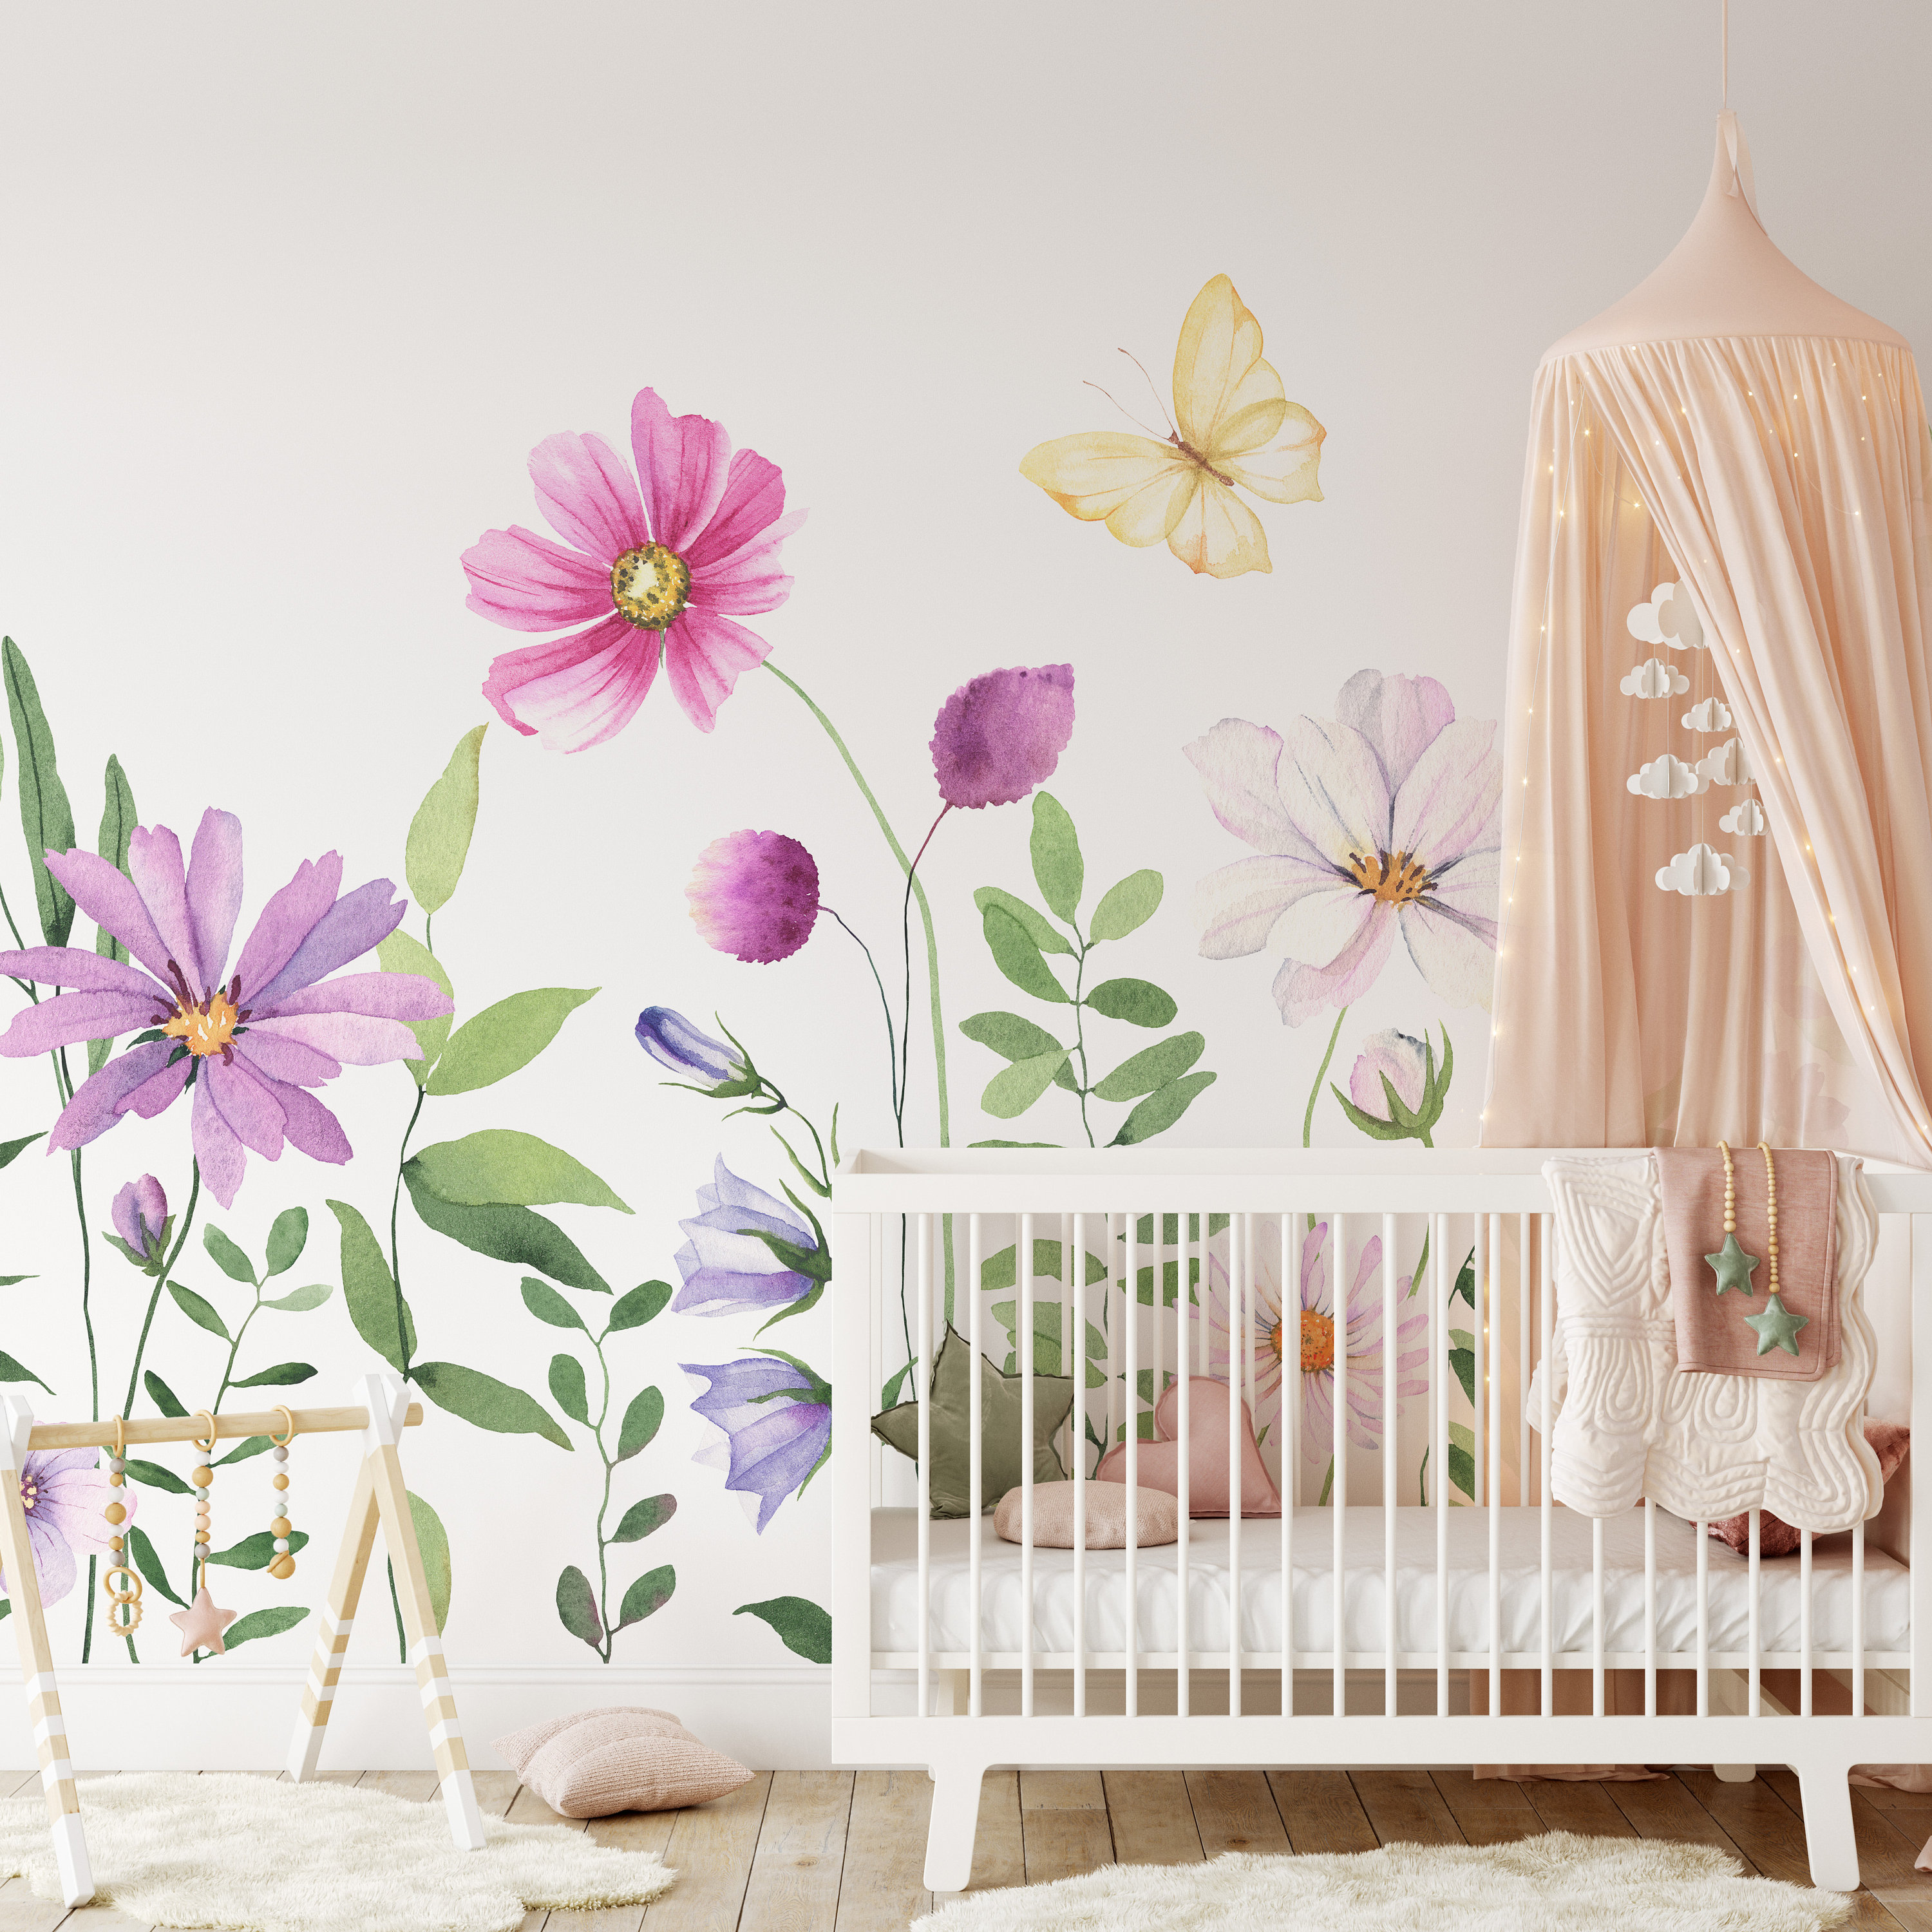 Papier peint aquarelle enfant - Baby Wall